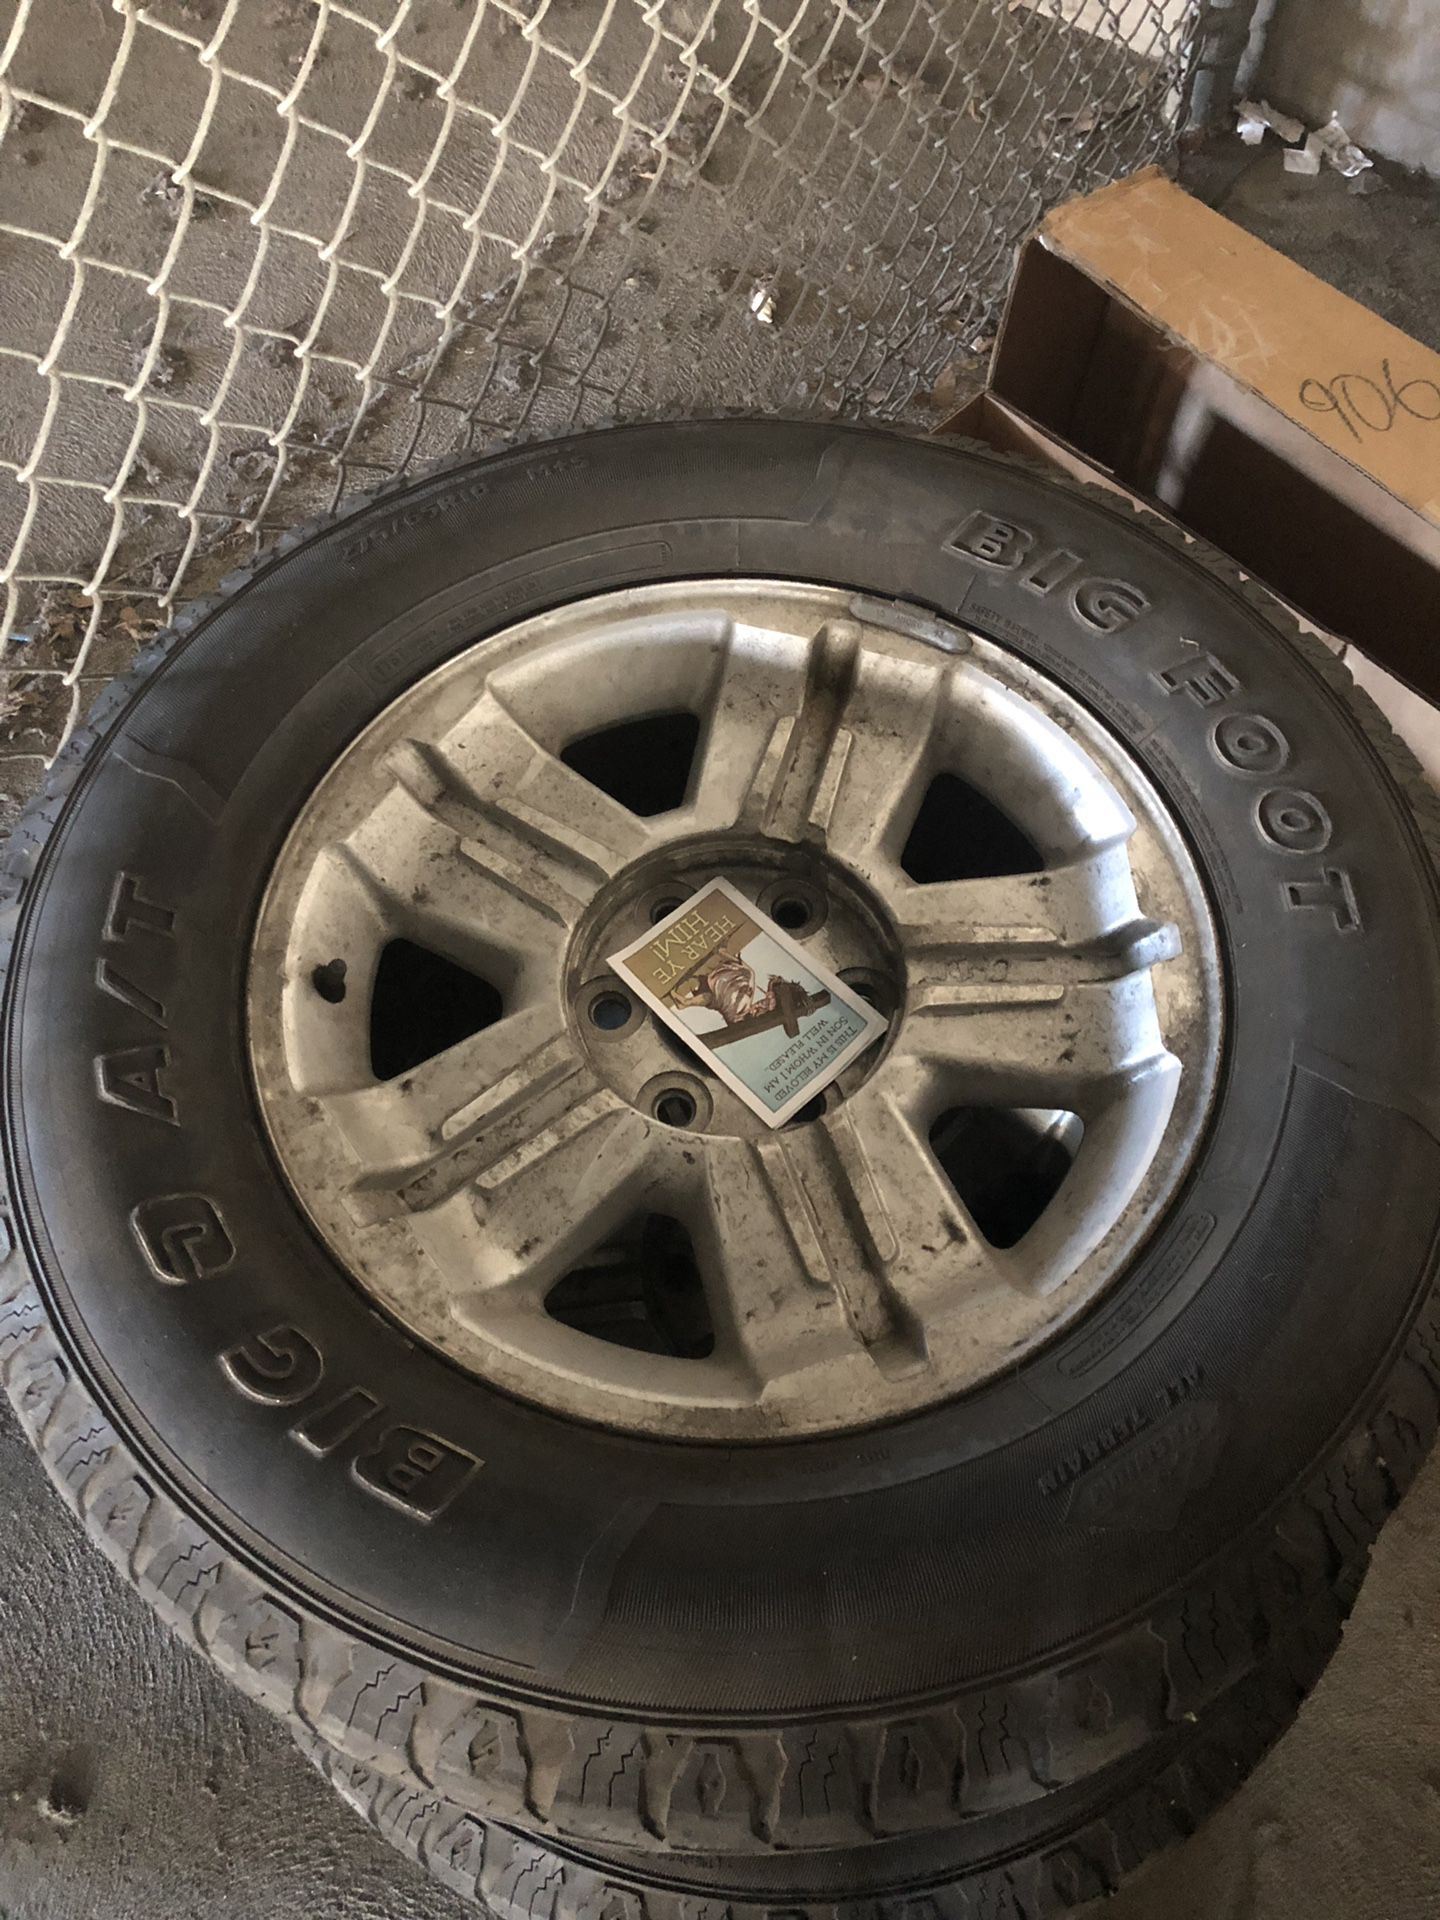 Chevy Silverado Tires and rims 275 R18